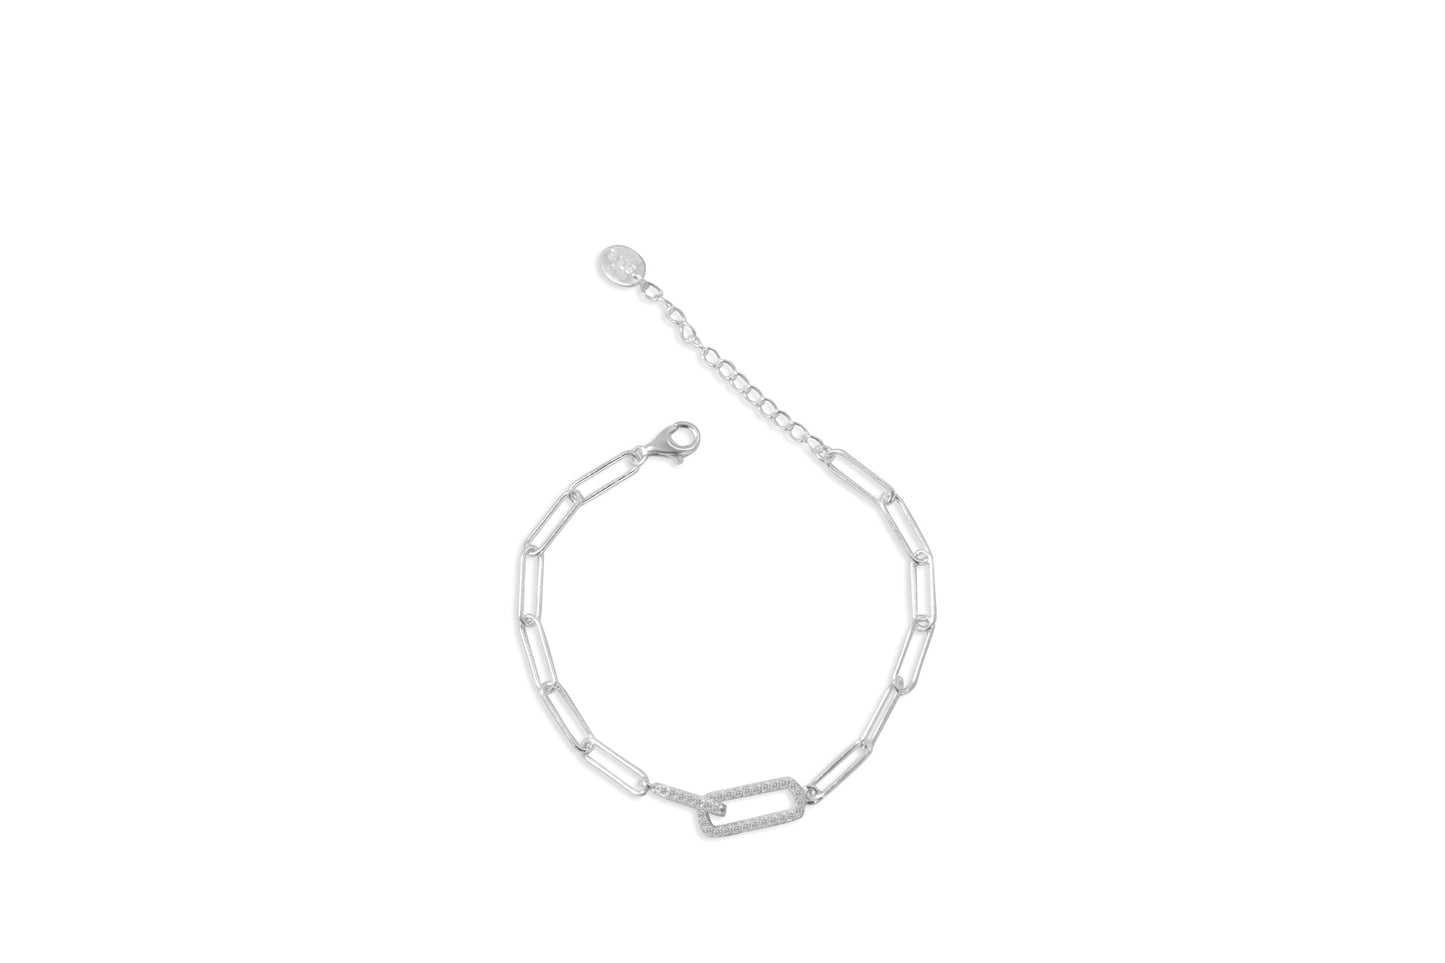 Linked Bracelet - Forever Connected